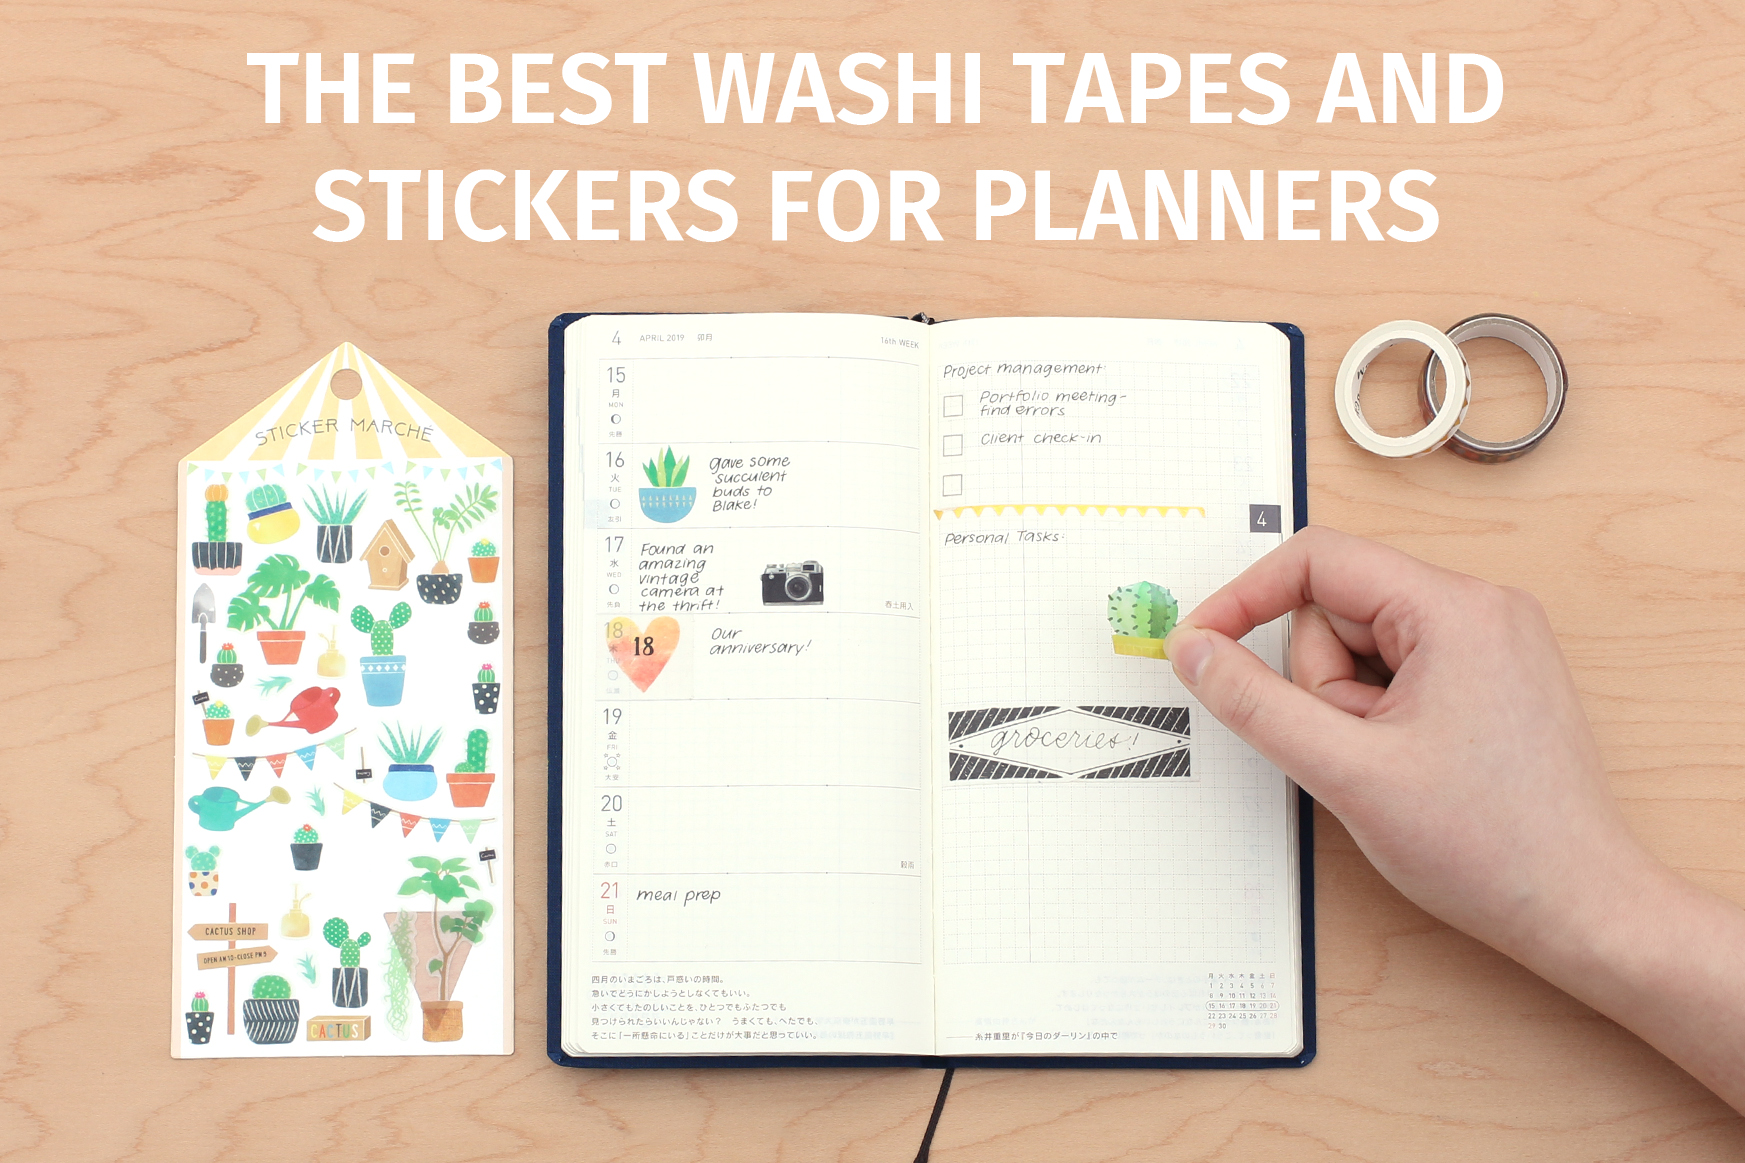 21 Ways to Use Washi Tape